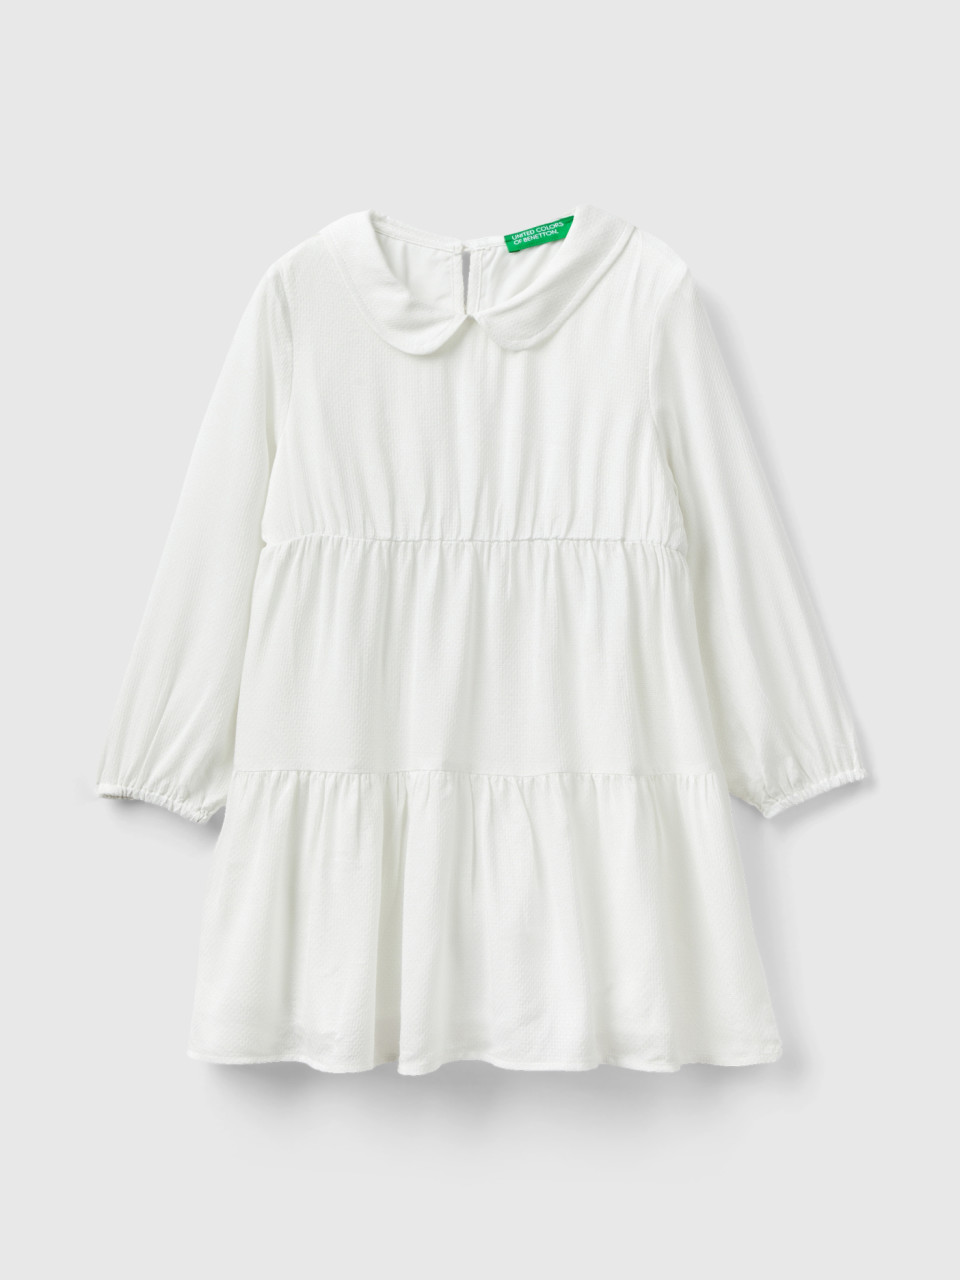 Benetton, Short Dress With Lurex, Creamy White, Kids